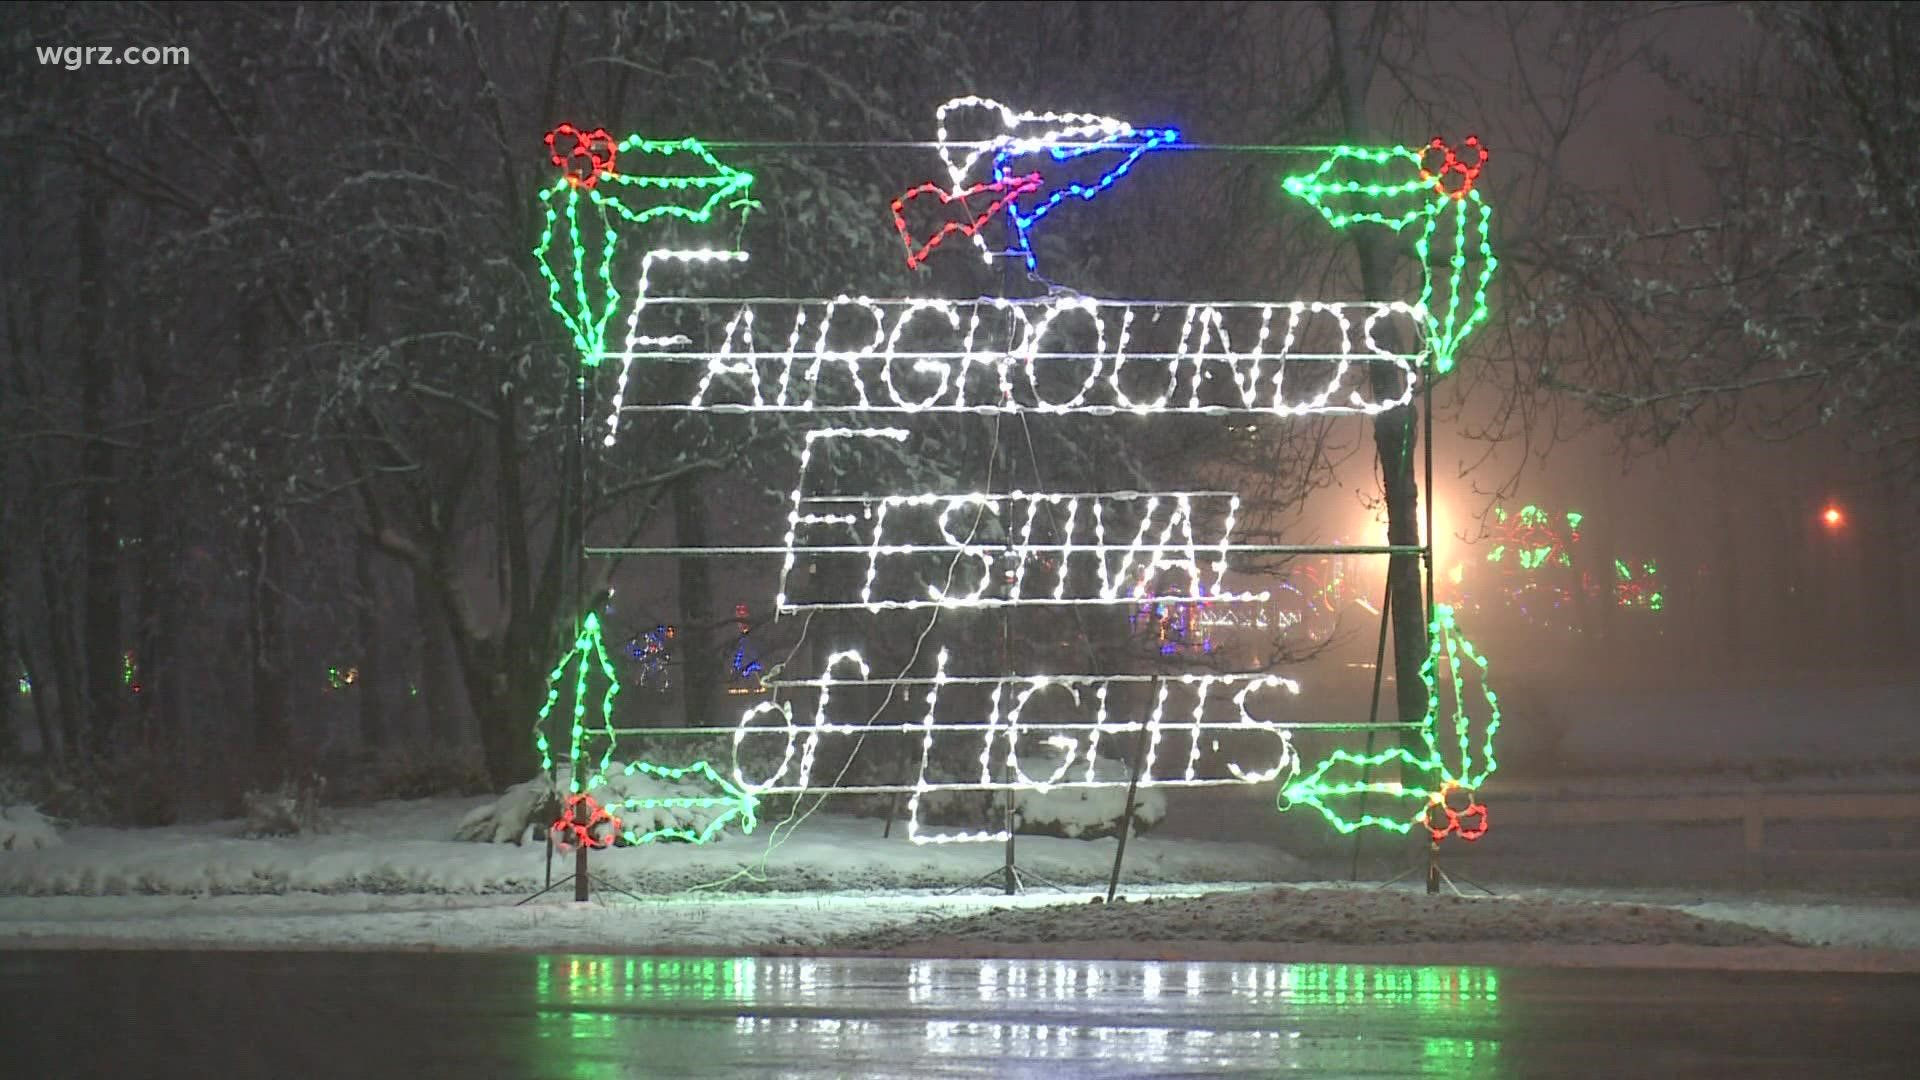 Festival of Lights to return to Hamburg Fairgrounds